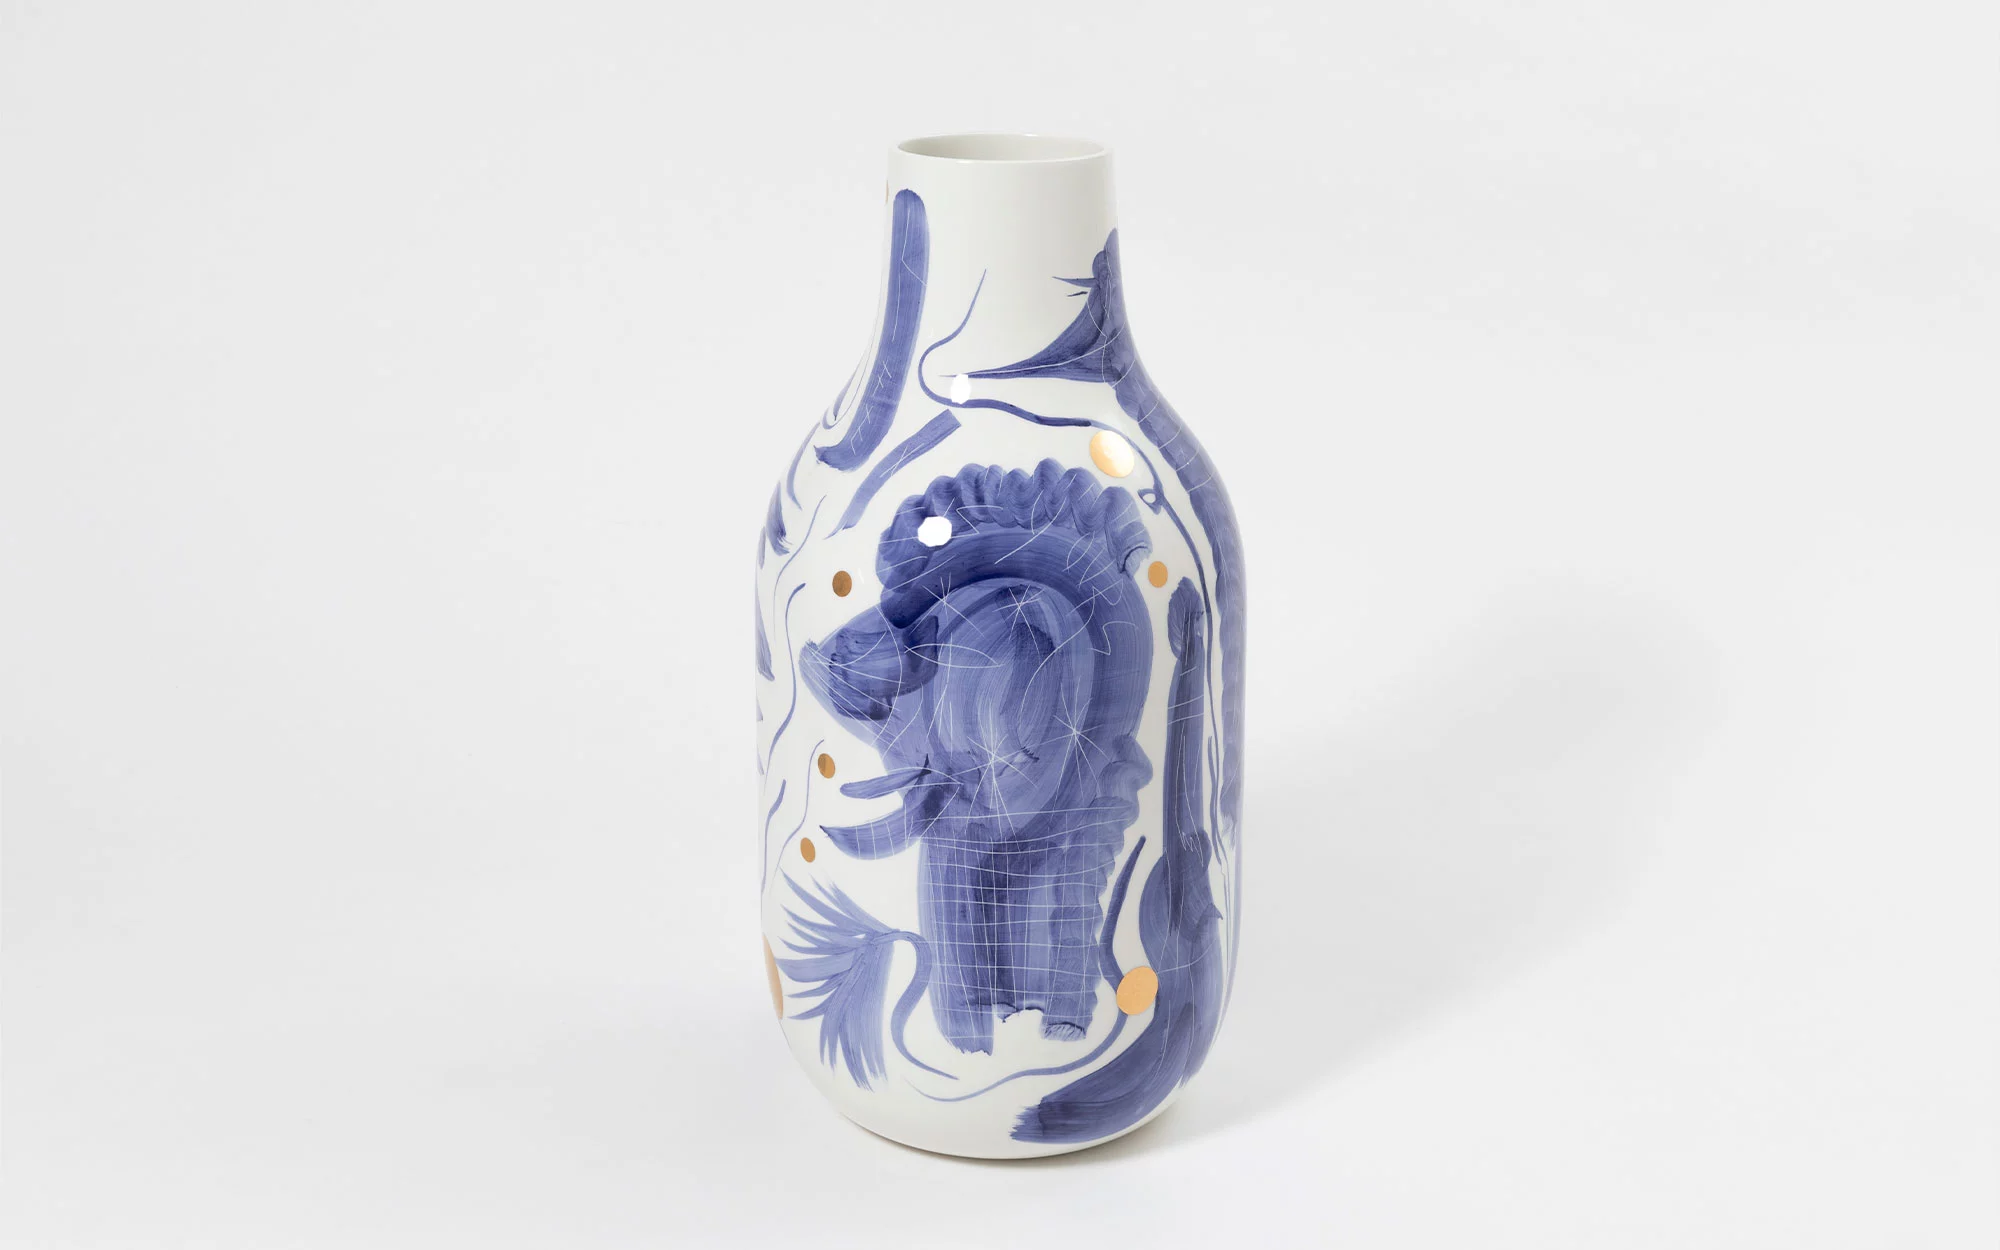 Chromatico Vase - Jaime Hayon - Table - Galerie kreo